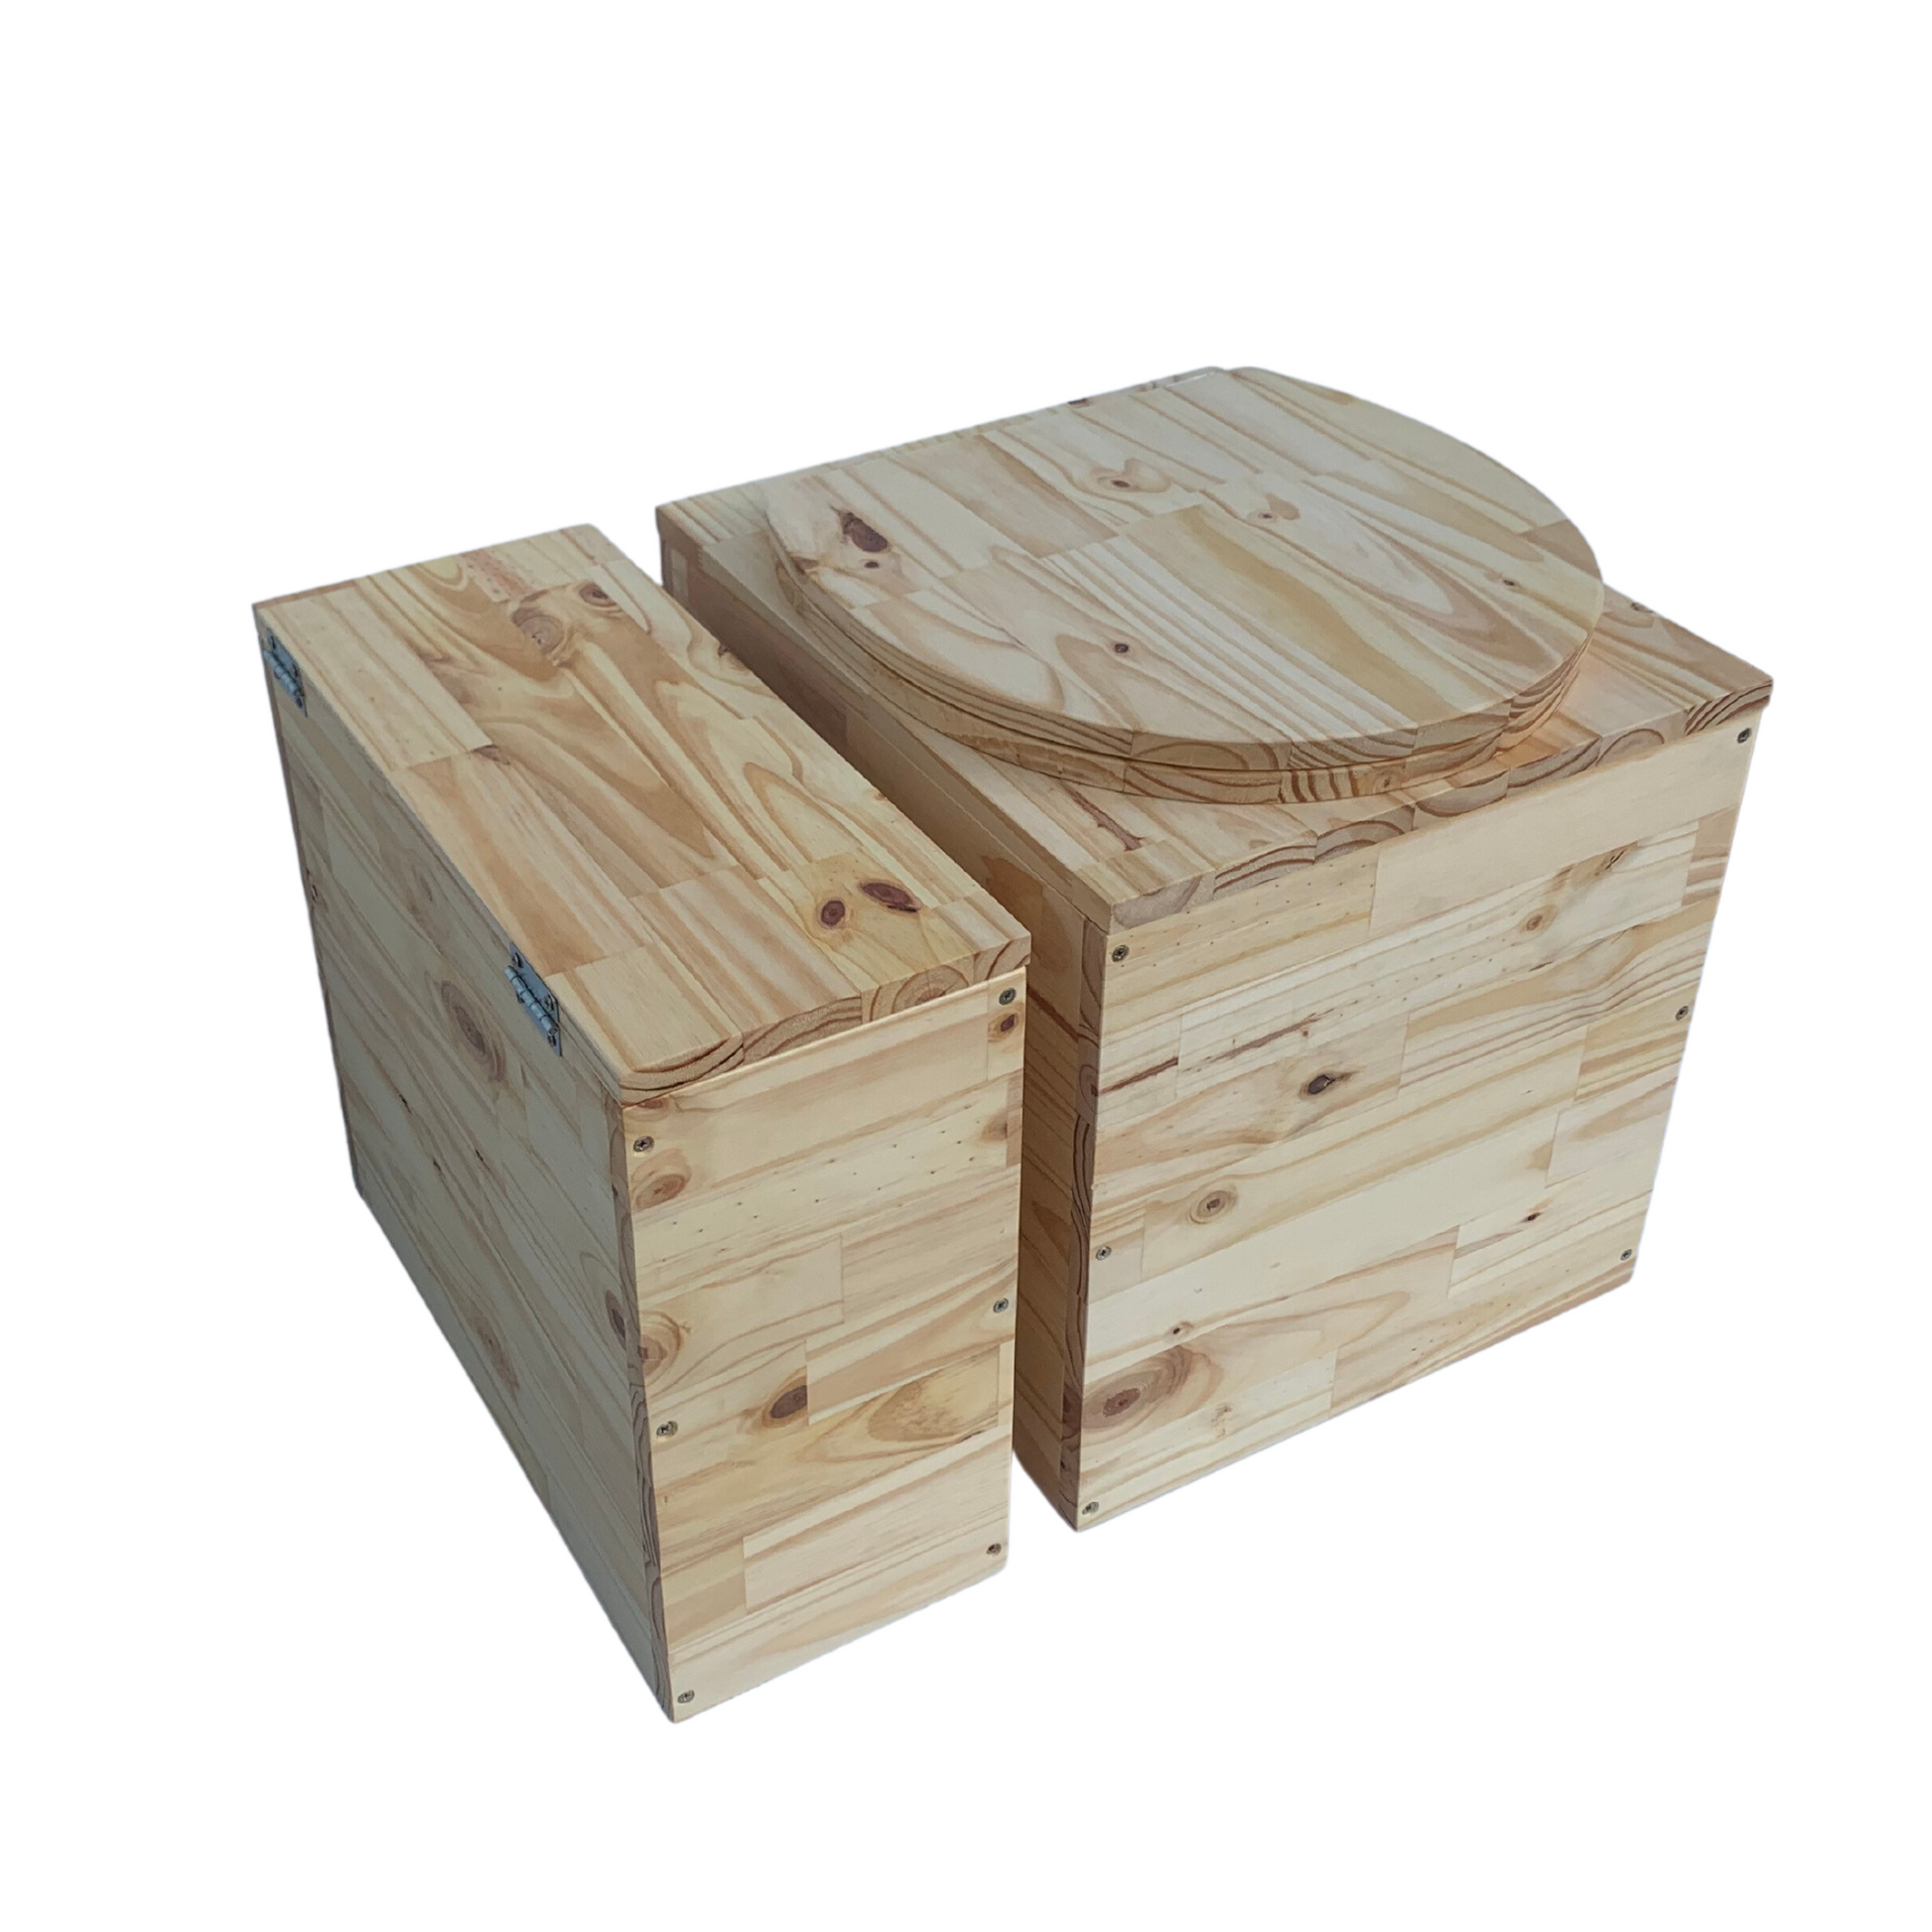 Toilette sèche compacte en bois massif - Seau inox – Alfortbois